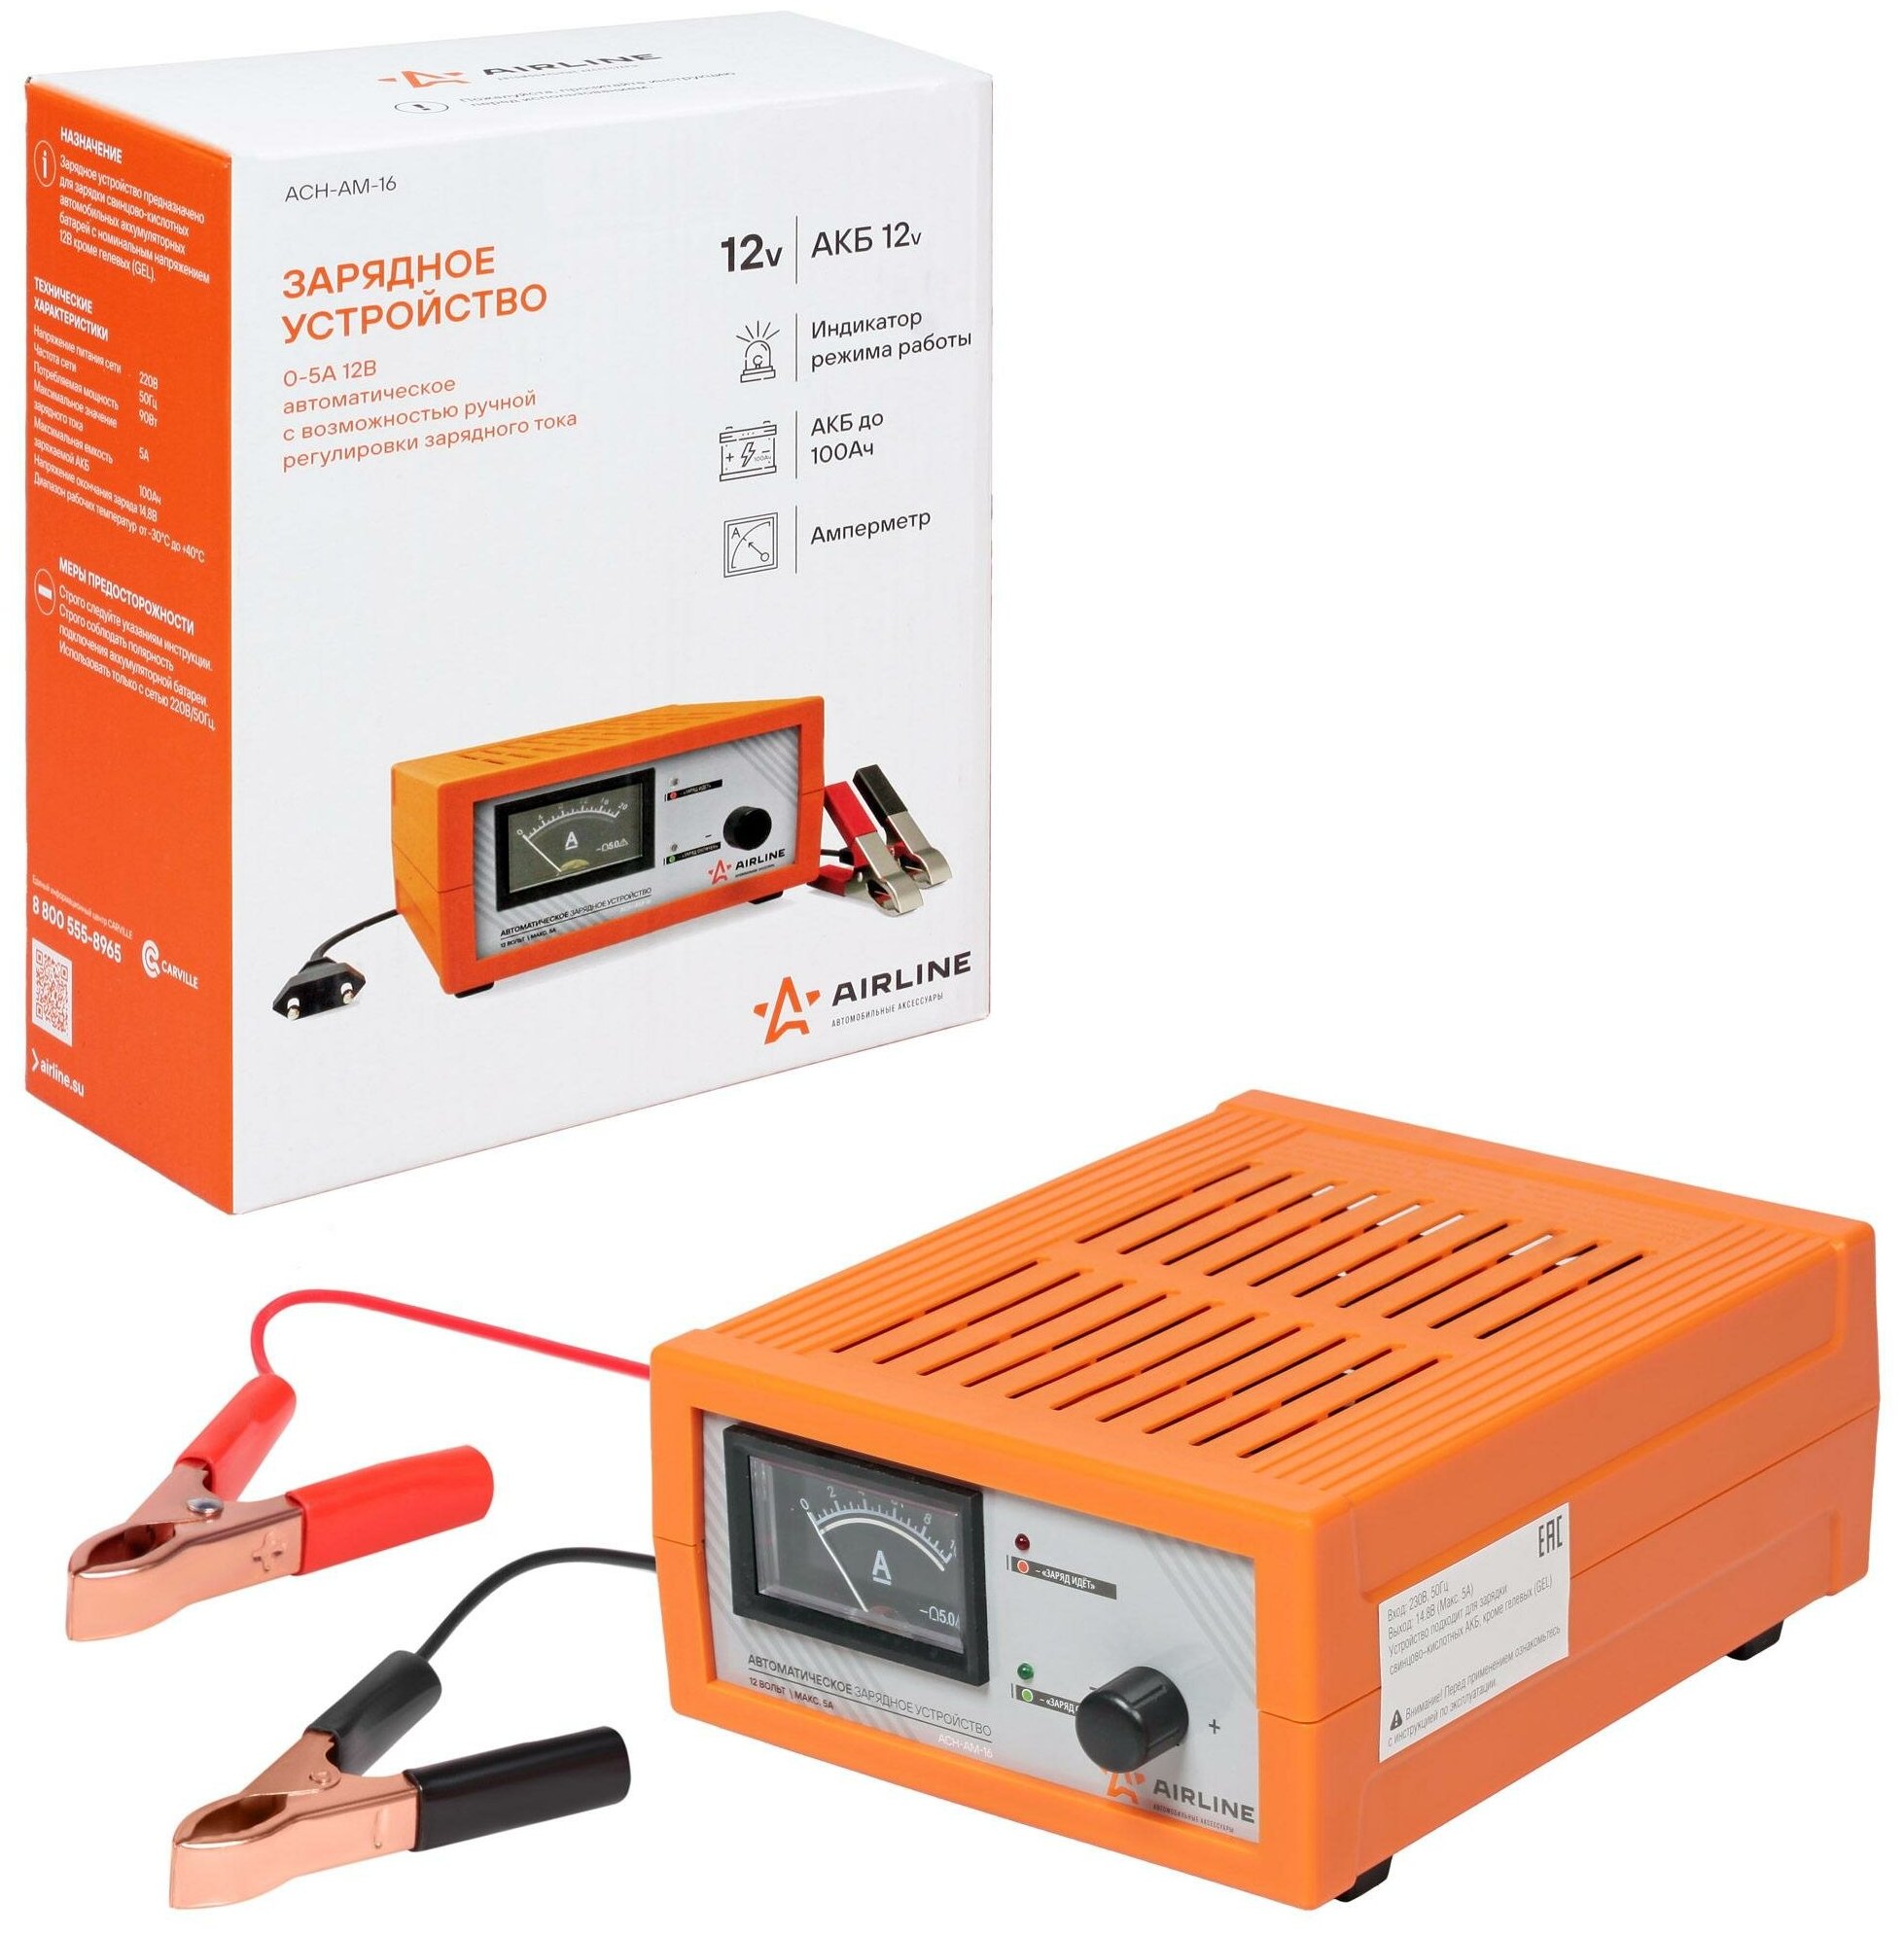 Зарядное устройство 0-5А 12В амперметр ручная регулировка зарядного тока импульсное